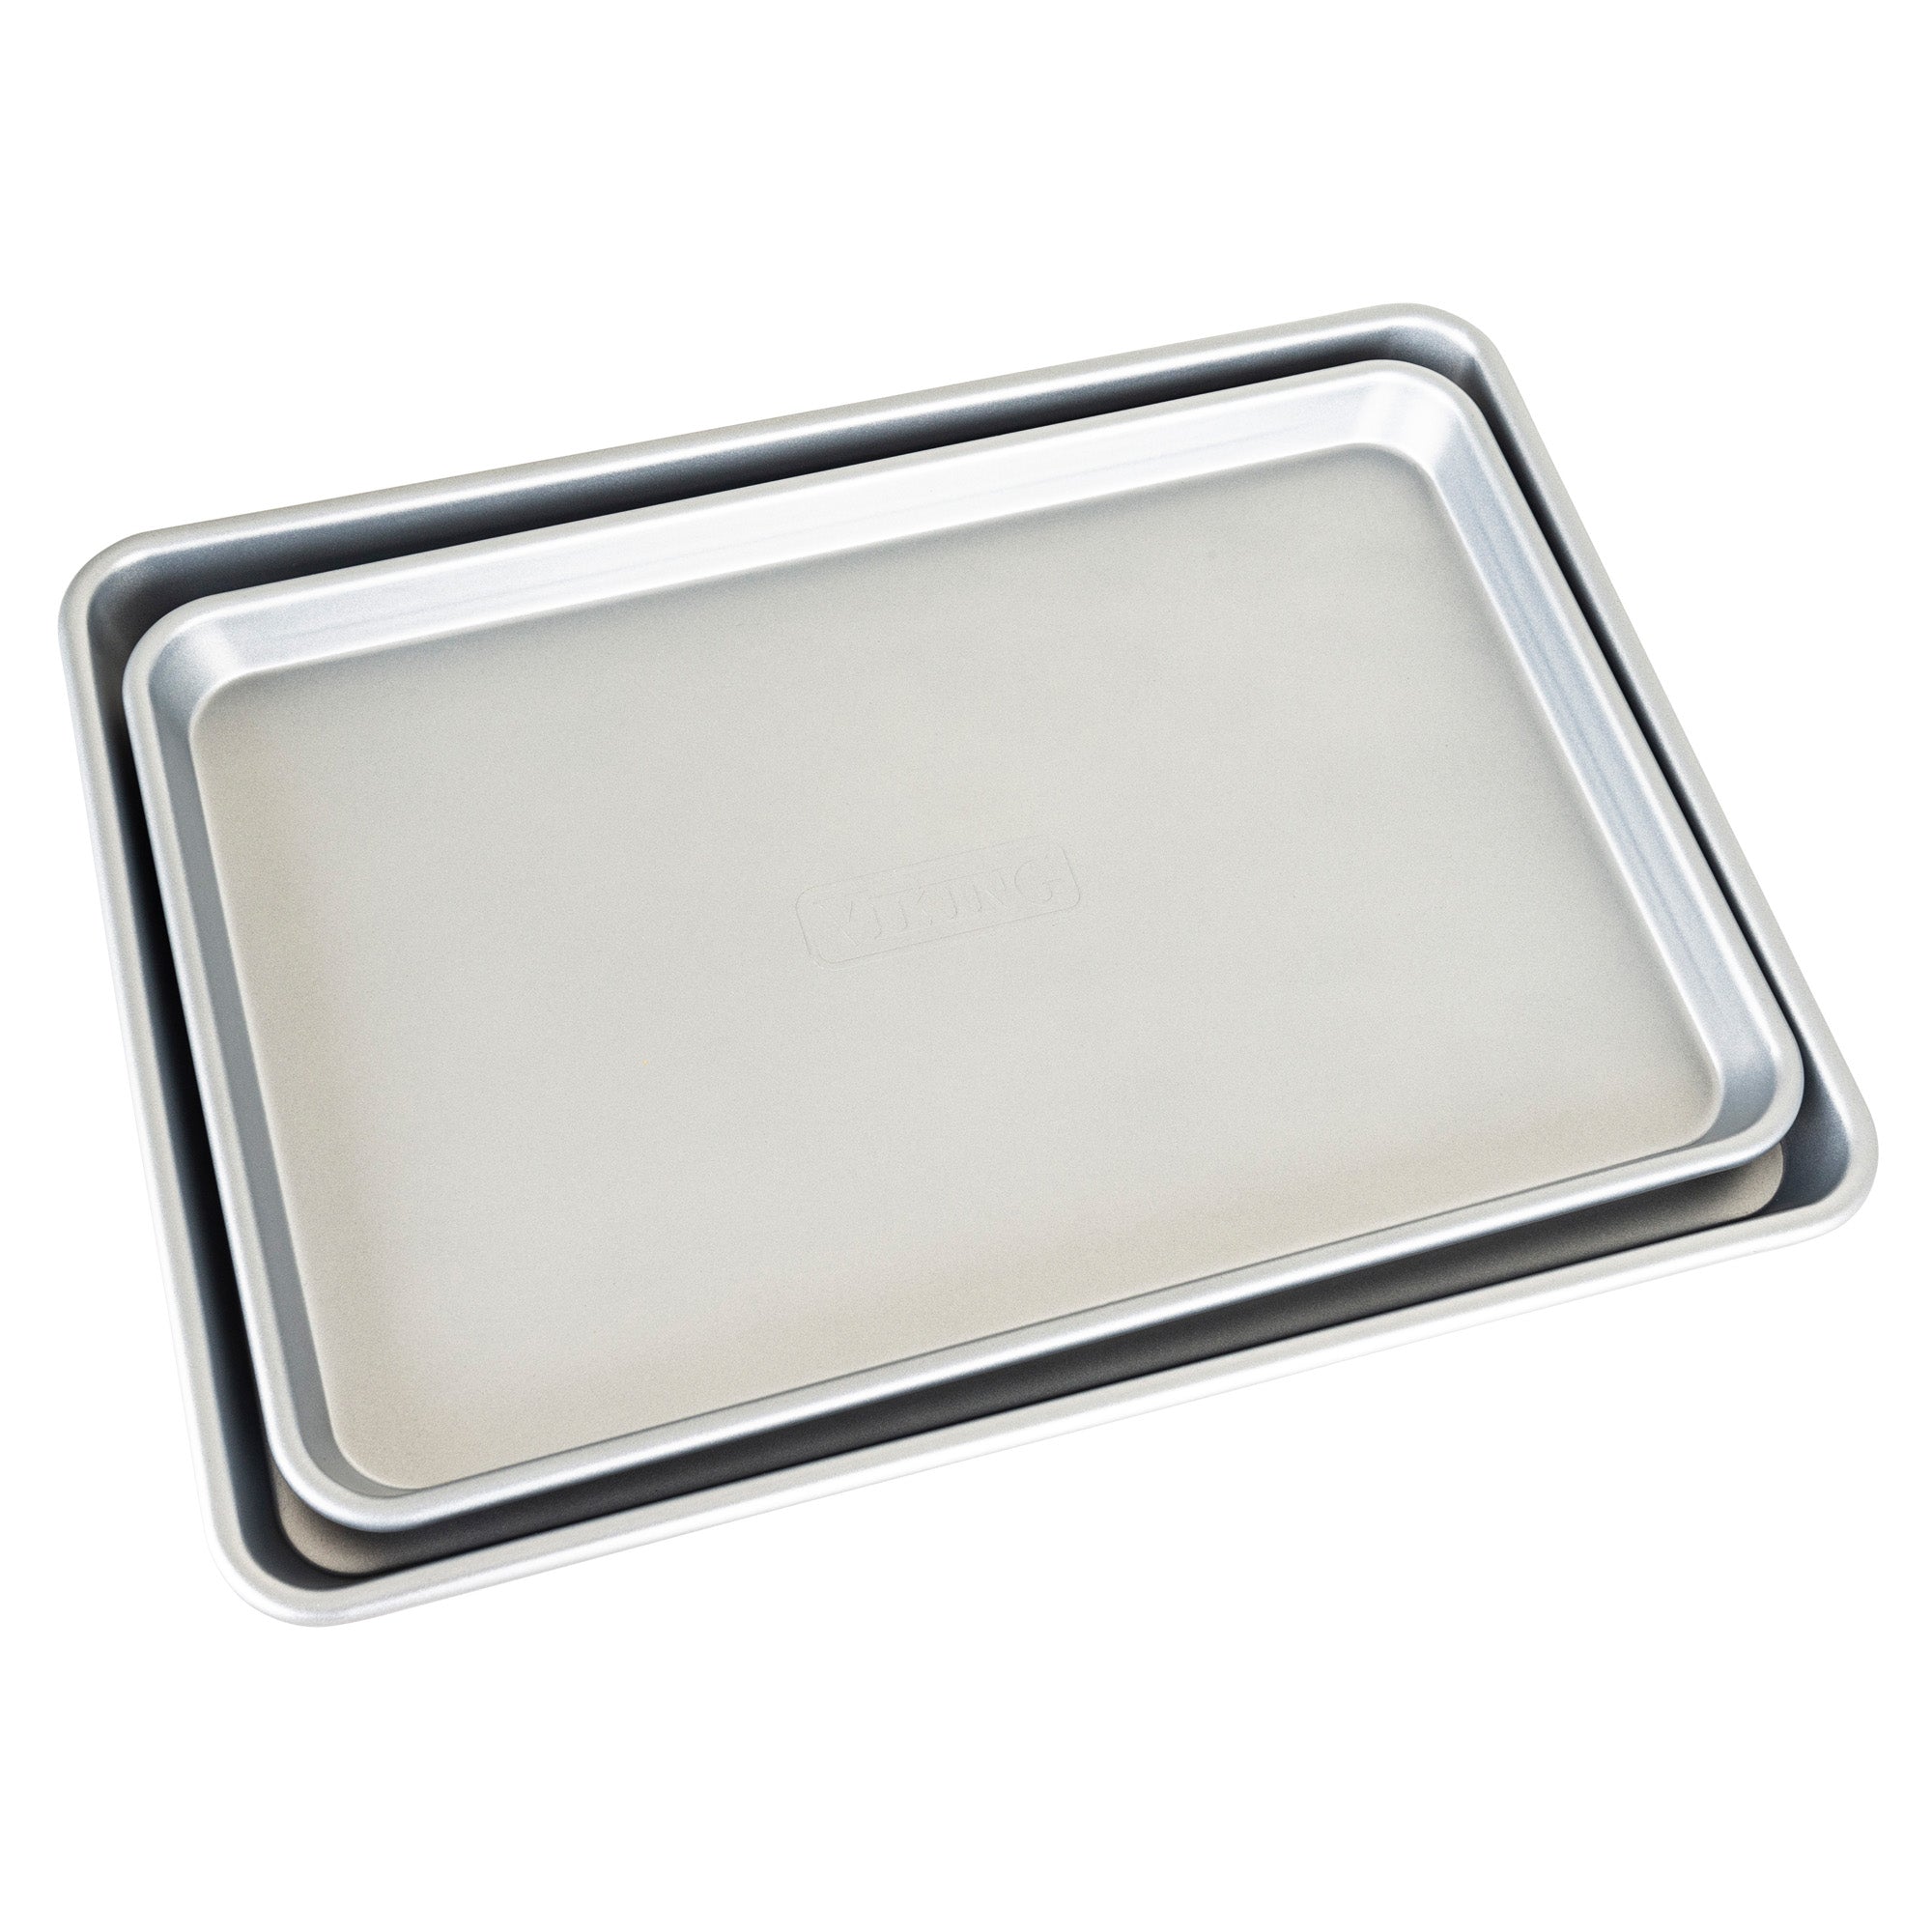 Baking Tray Set of 2, Stainless Steel Baking Sheet Pan